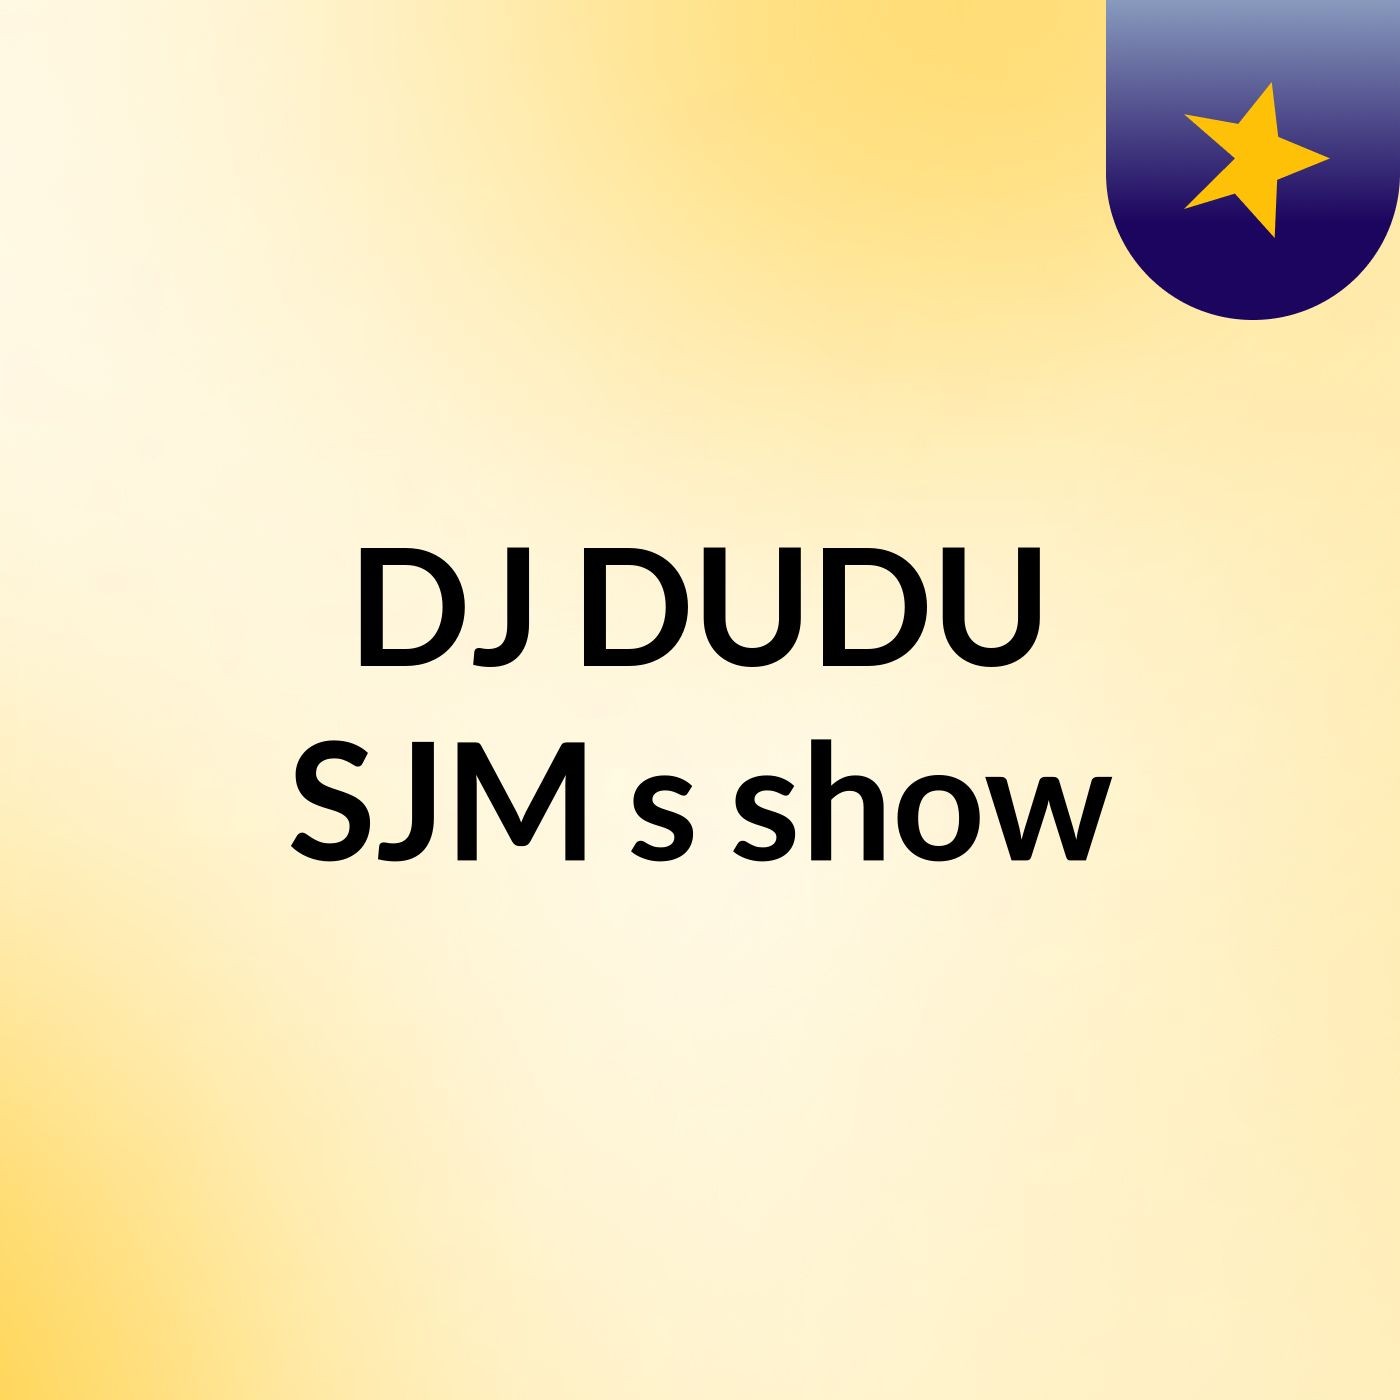 DJ DUDU SJM's show